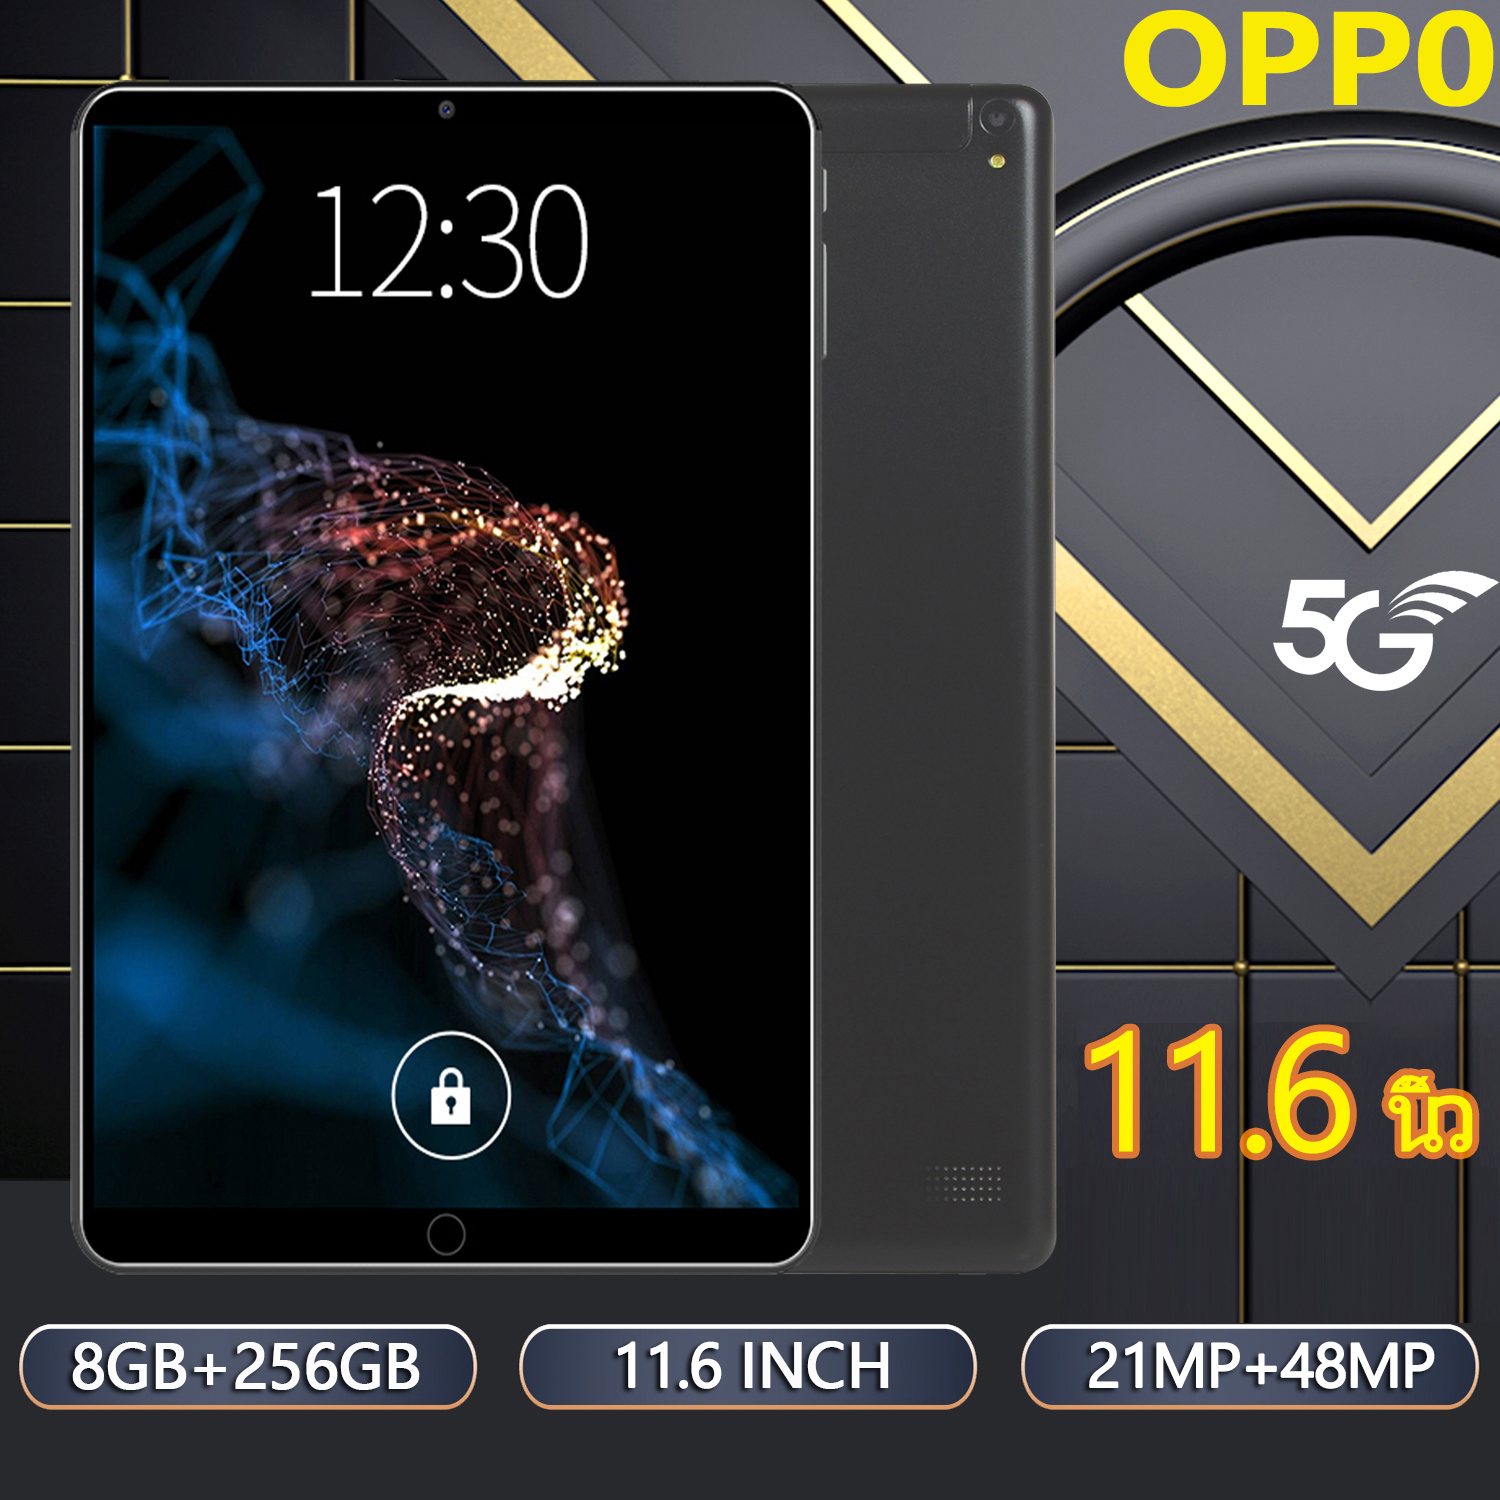 แท็บเล็ตแอนดรอยด์ราคาถูกๆ OPP0 Tablet Andriod RAM12G ROM512G แท็บเล็ต 12GB+512GB แท็บเล็ต LTE/Wifi จอFull HD แทบเล็ตราคาถูก เสียงคุณภาพ มีการรับประกันสินค้า Wifi ไอเเพ็ด หน้าจอ 11.6นิ้ว ความจุแบตเตอรี่ 8800 mAh แท็บเล็ตถูกๆ ไอแพดราคาถูก